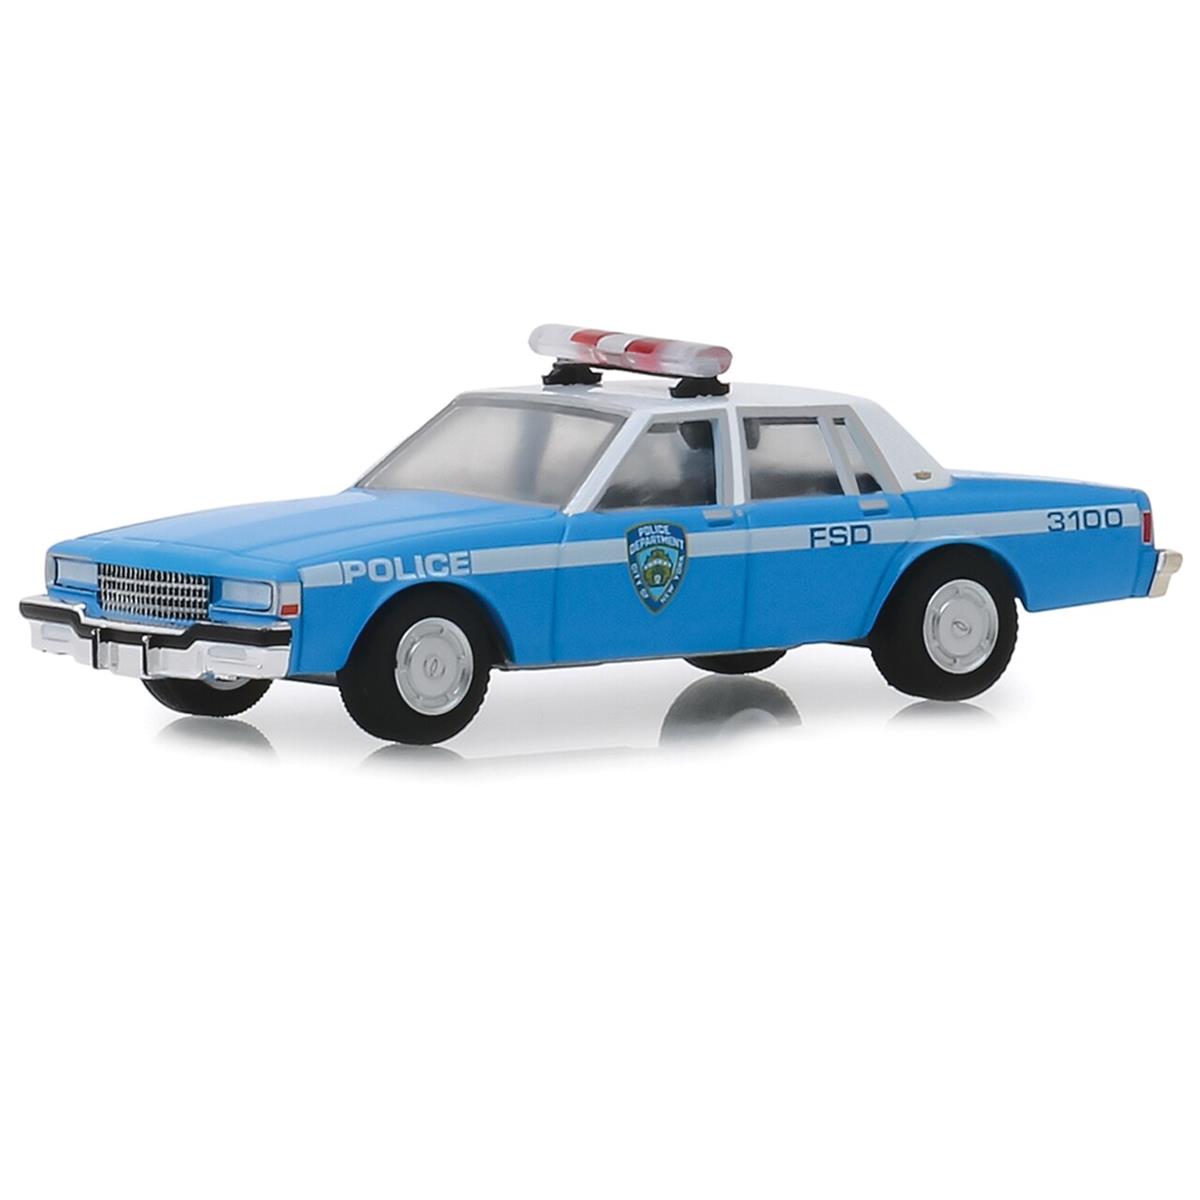 Greenlight 1990 NYPD Chevrolet シボレー Caprice Patrol Car 1/64 スケール | ダイキャストカー ダイキャスト 車のおもちゃ 車 おもちゃ コレクション ミニチュア ダイカスト モデルカー ミニカー アメ車 ギフト プレゼント